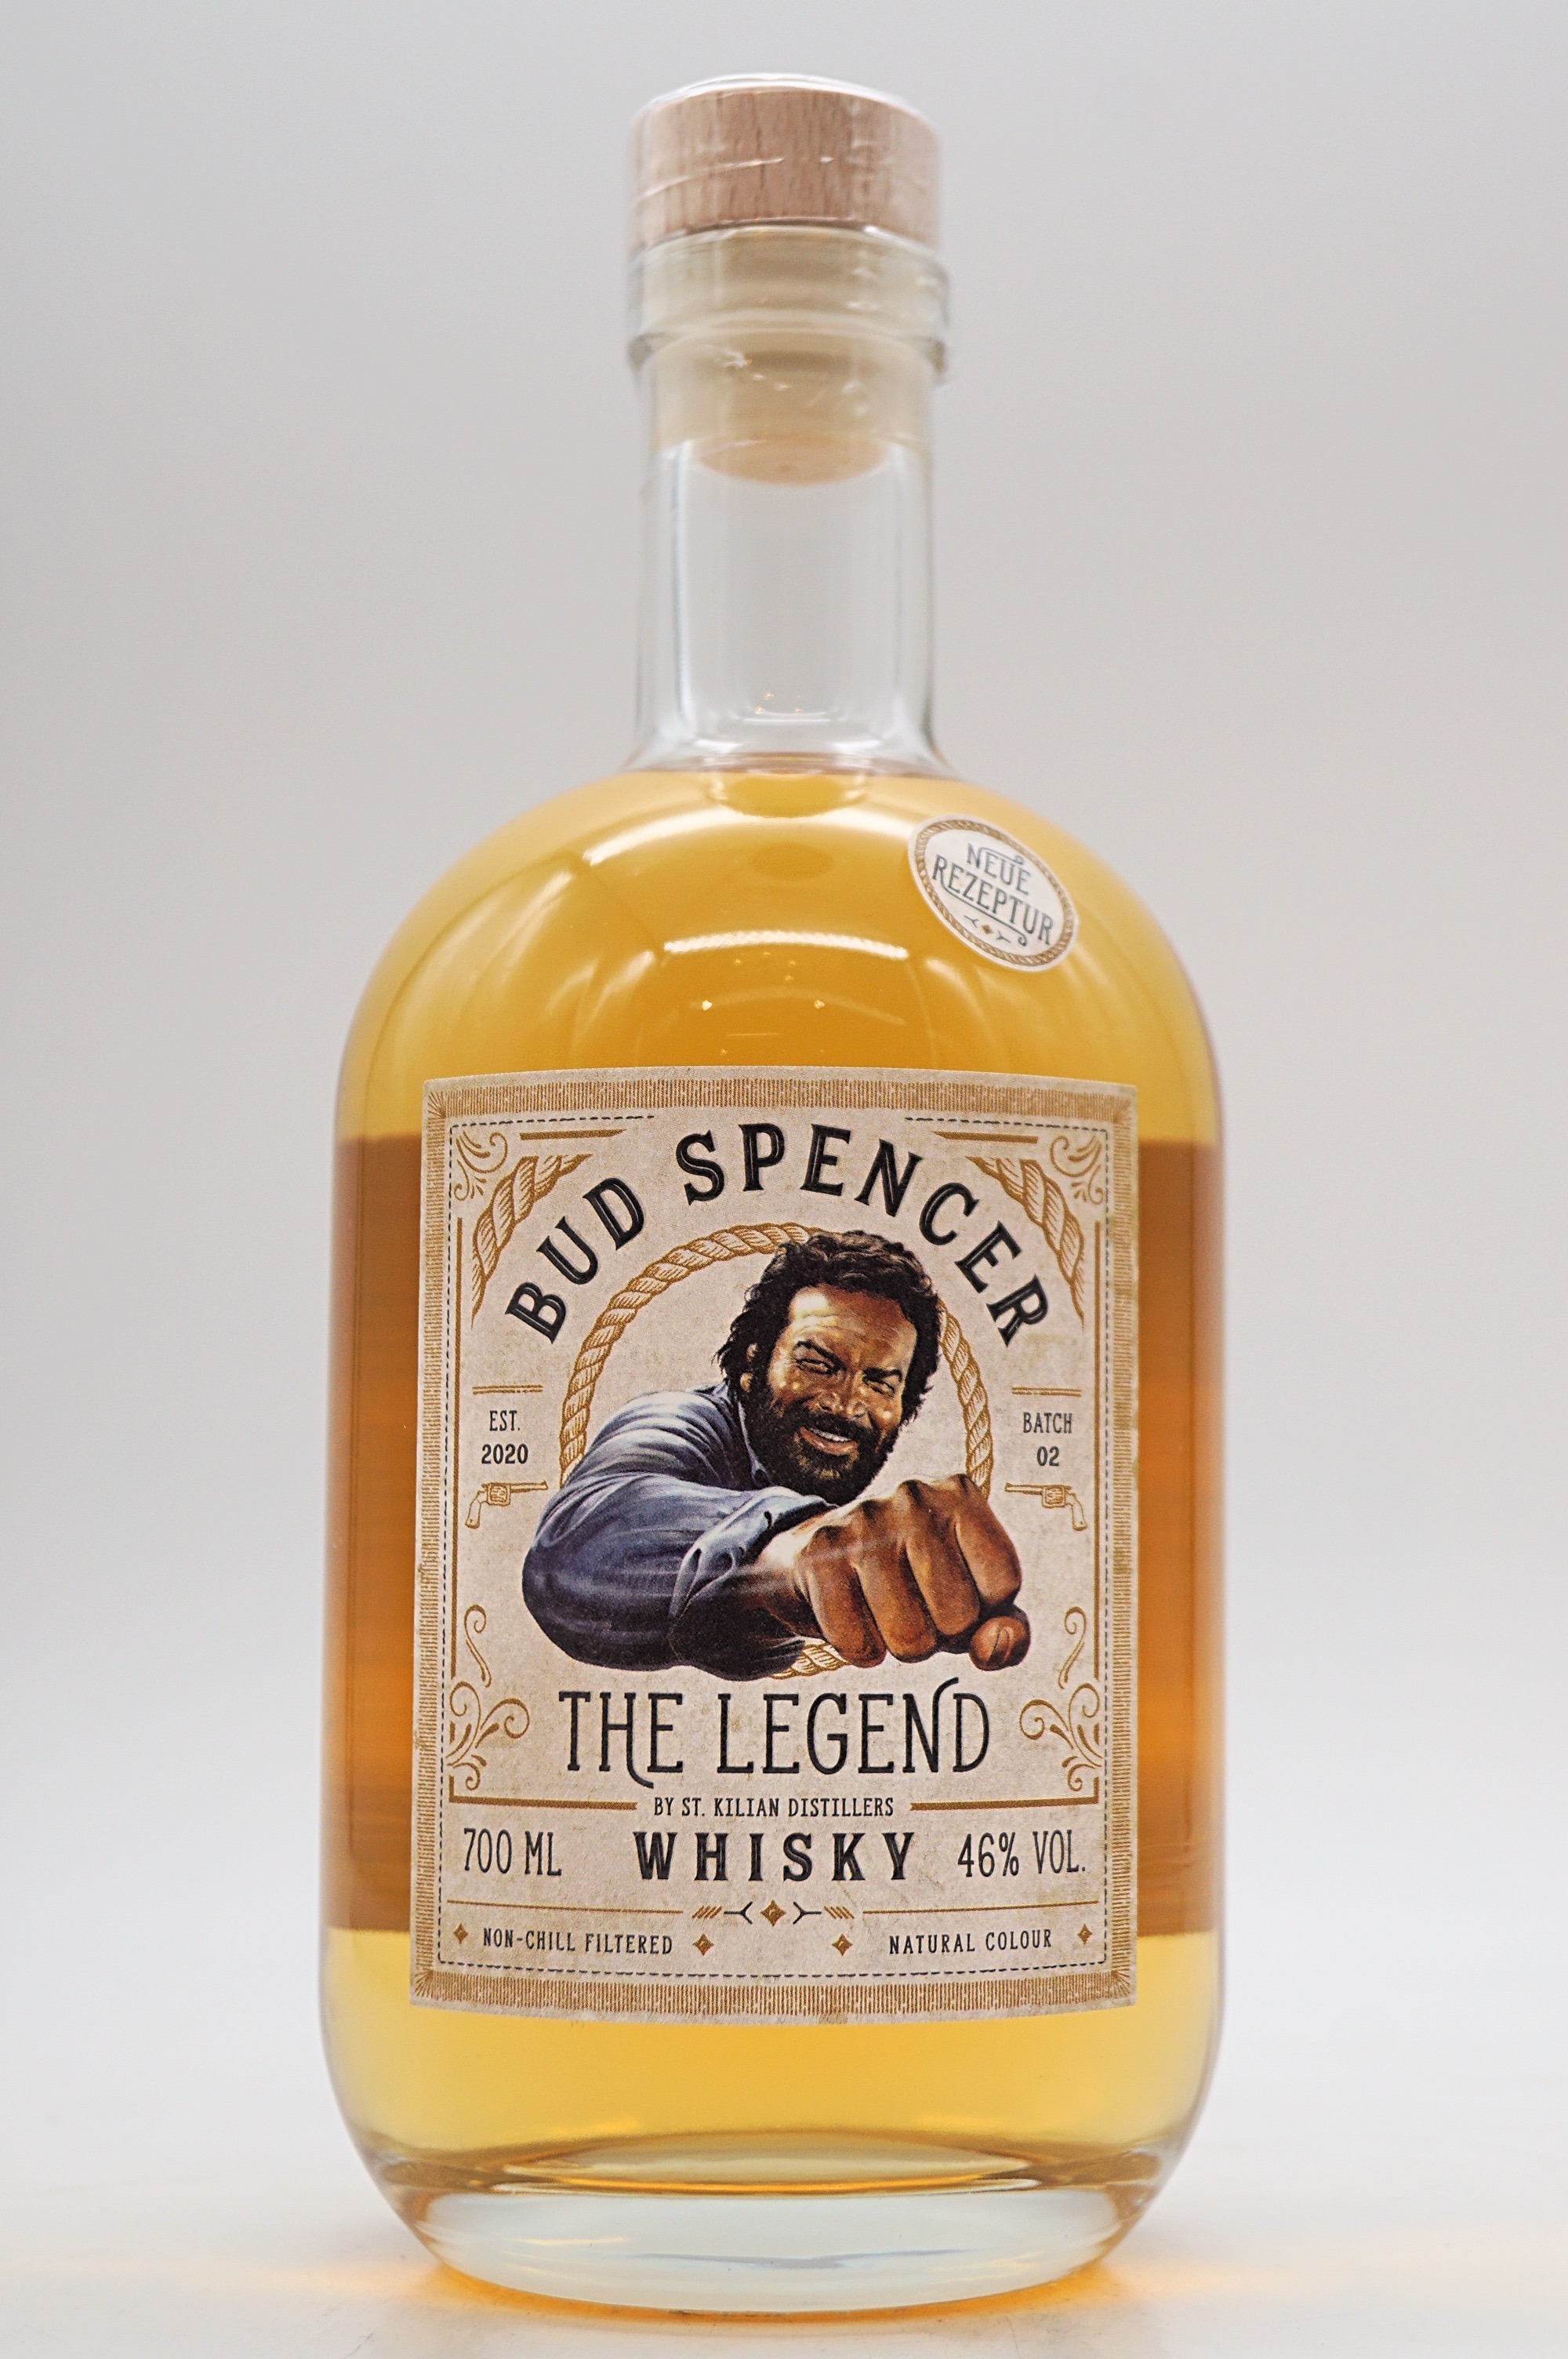 Bud Spencer The Legend Blended Malt Whisky Mild